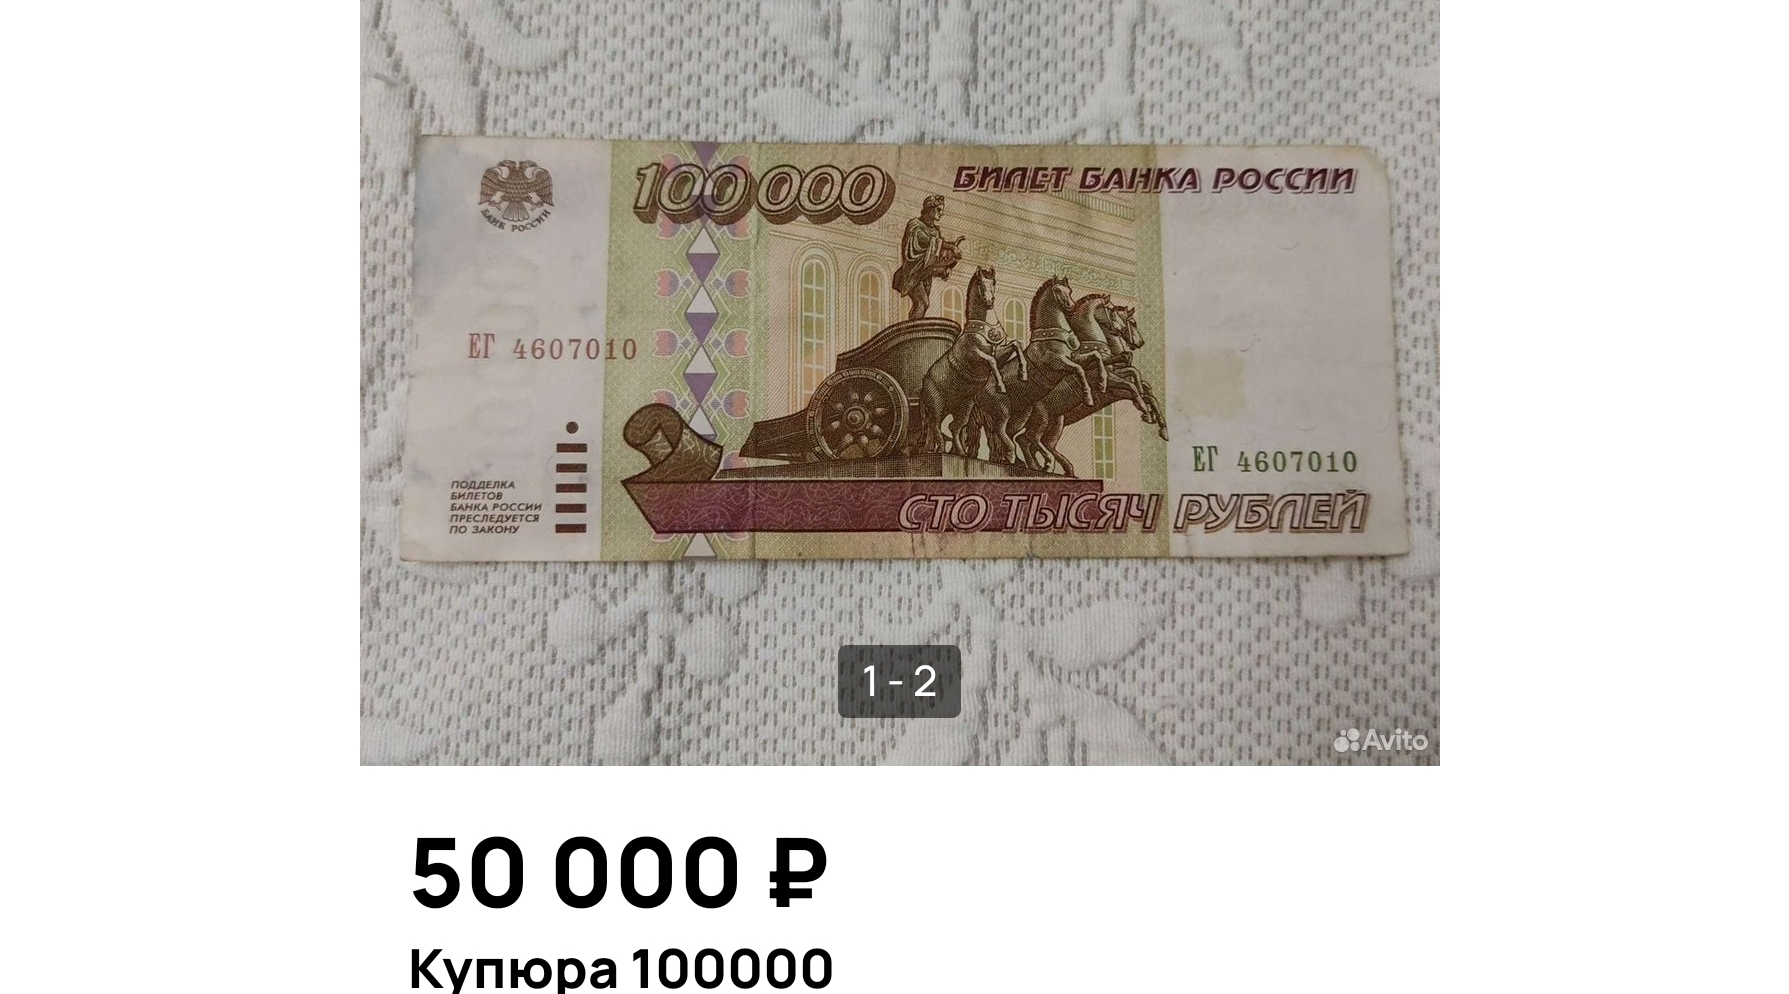 Житель Мытищ продает на онлайн-платформе стотысячную купюру за 50 тысяч рублей